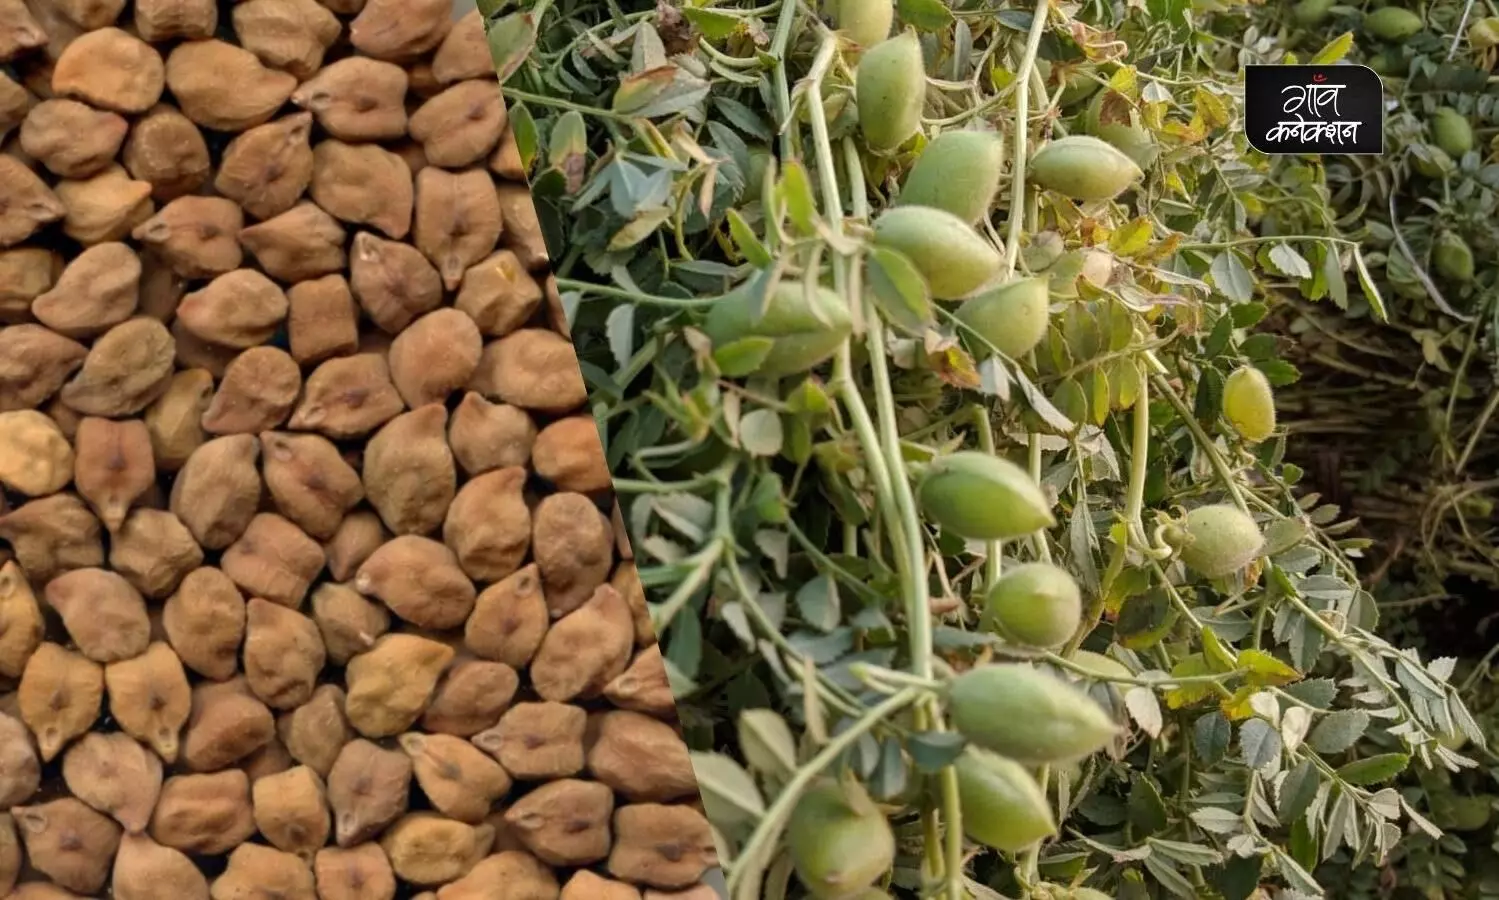 मध्य प्रदेश: अब एमएसपी पर हर दिन 40 क्विंटल चना बेच सकेंगे किसान